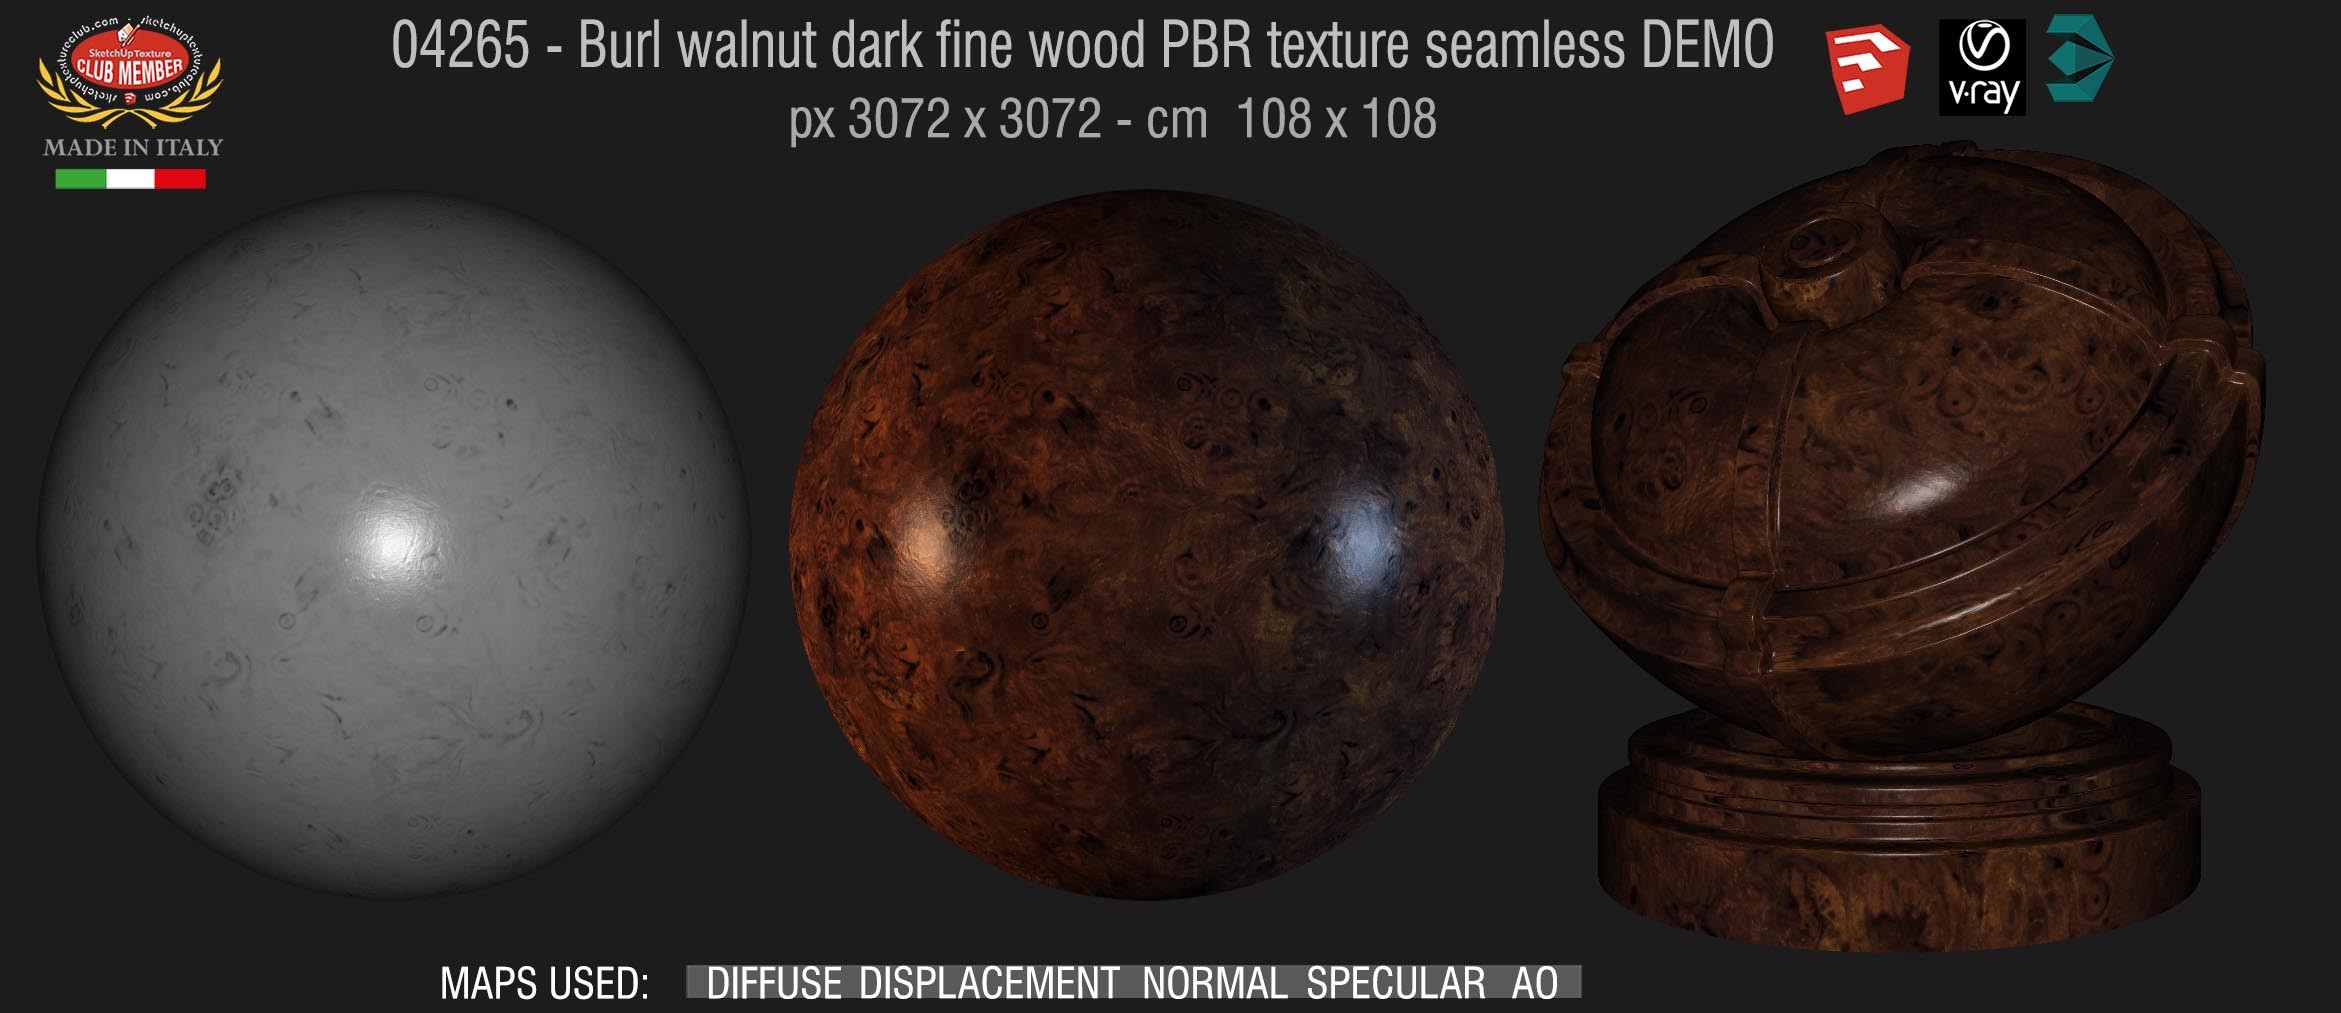 04265 Burl walnut dark fine wood PBR texture seamless DEMO